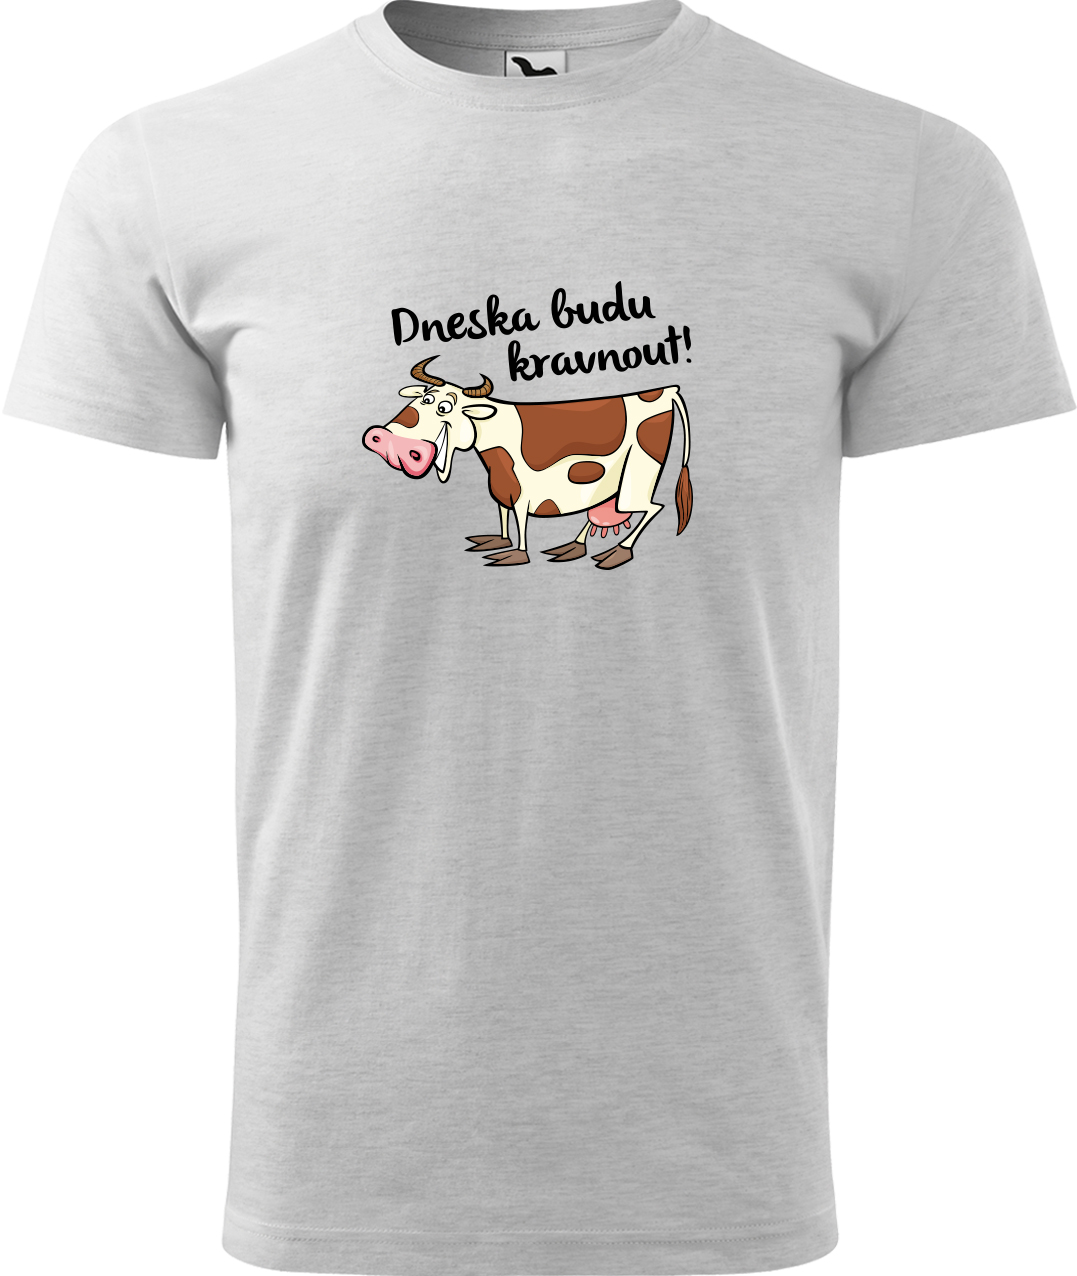 Pánské tričko s krávou - Dneska budu kravnout! Velikost: S, Barva: Světle šedý melír (03), Střih: pánský